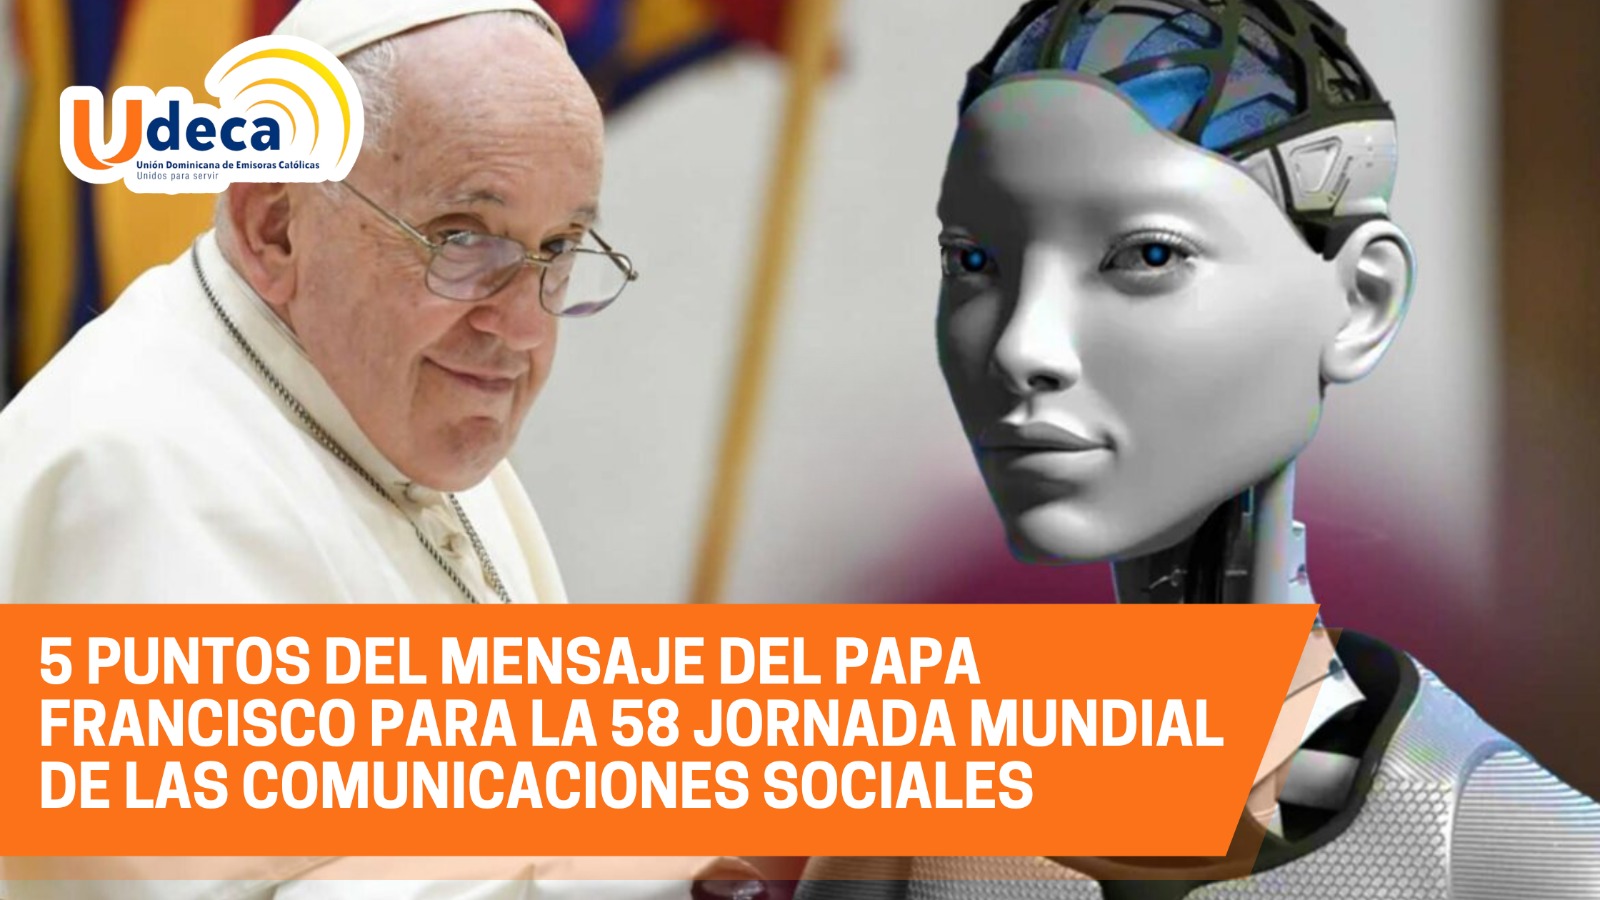  5 puntos del mensaje del Papa Francisco para la 58 Jornada Mundial de las Comunicaciones Sociales.